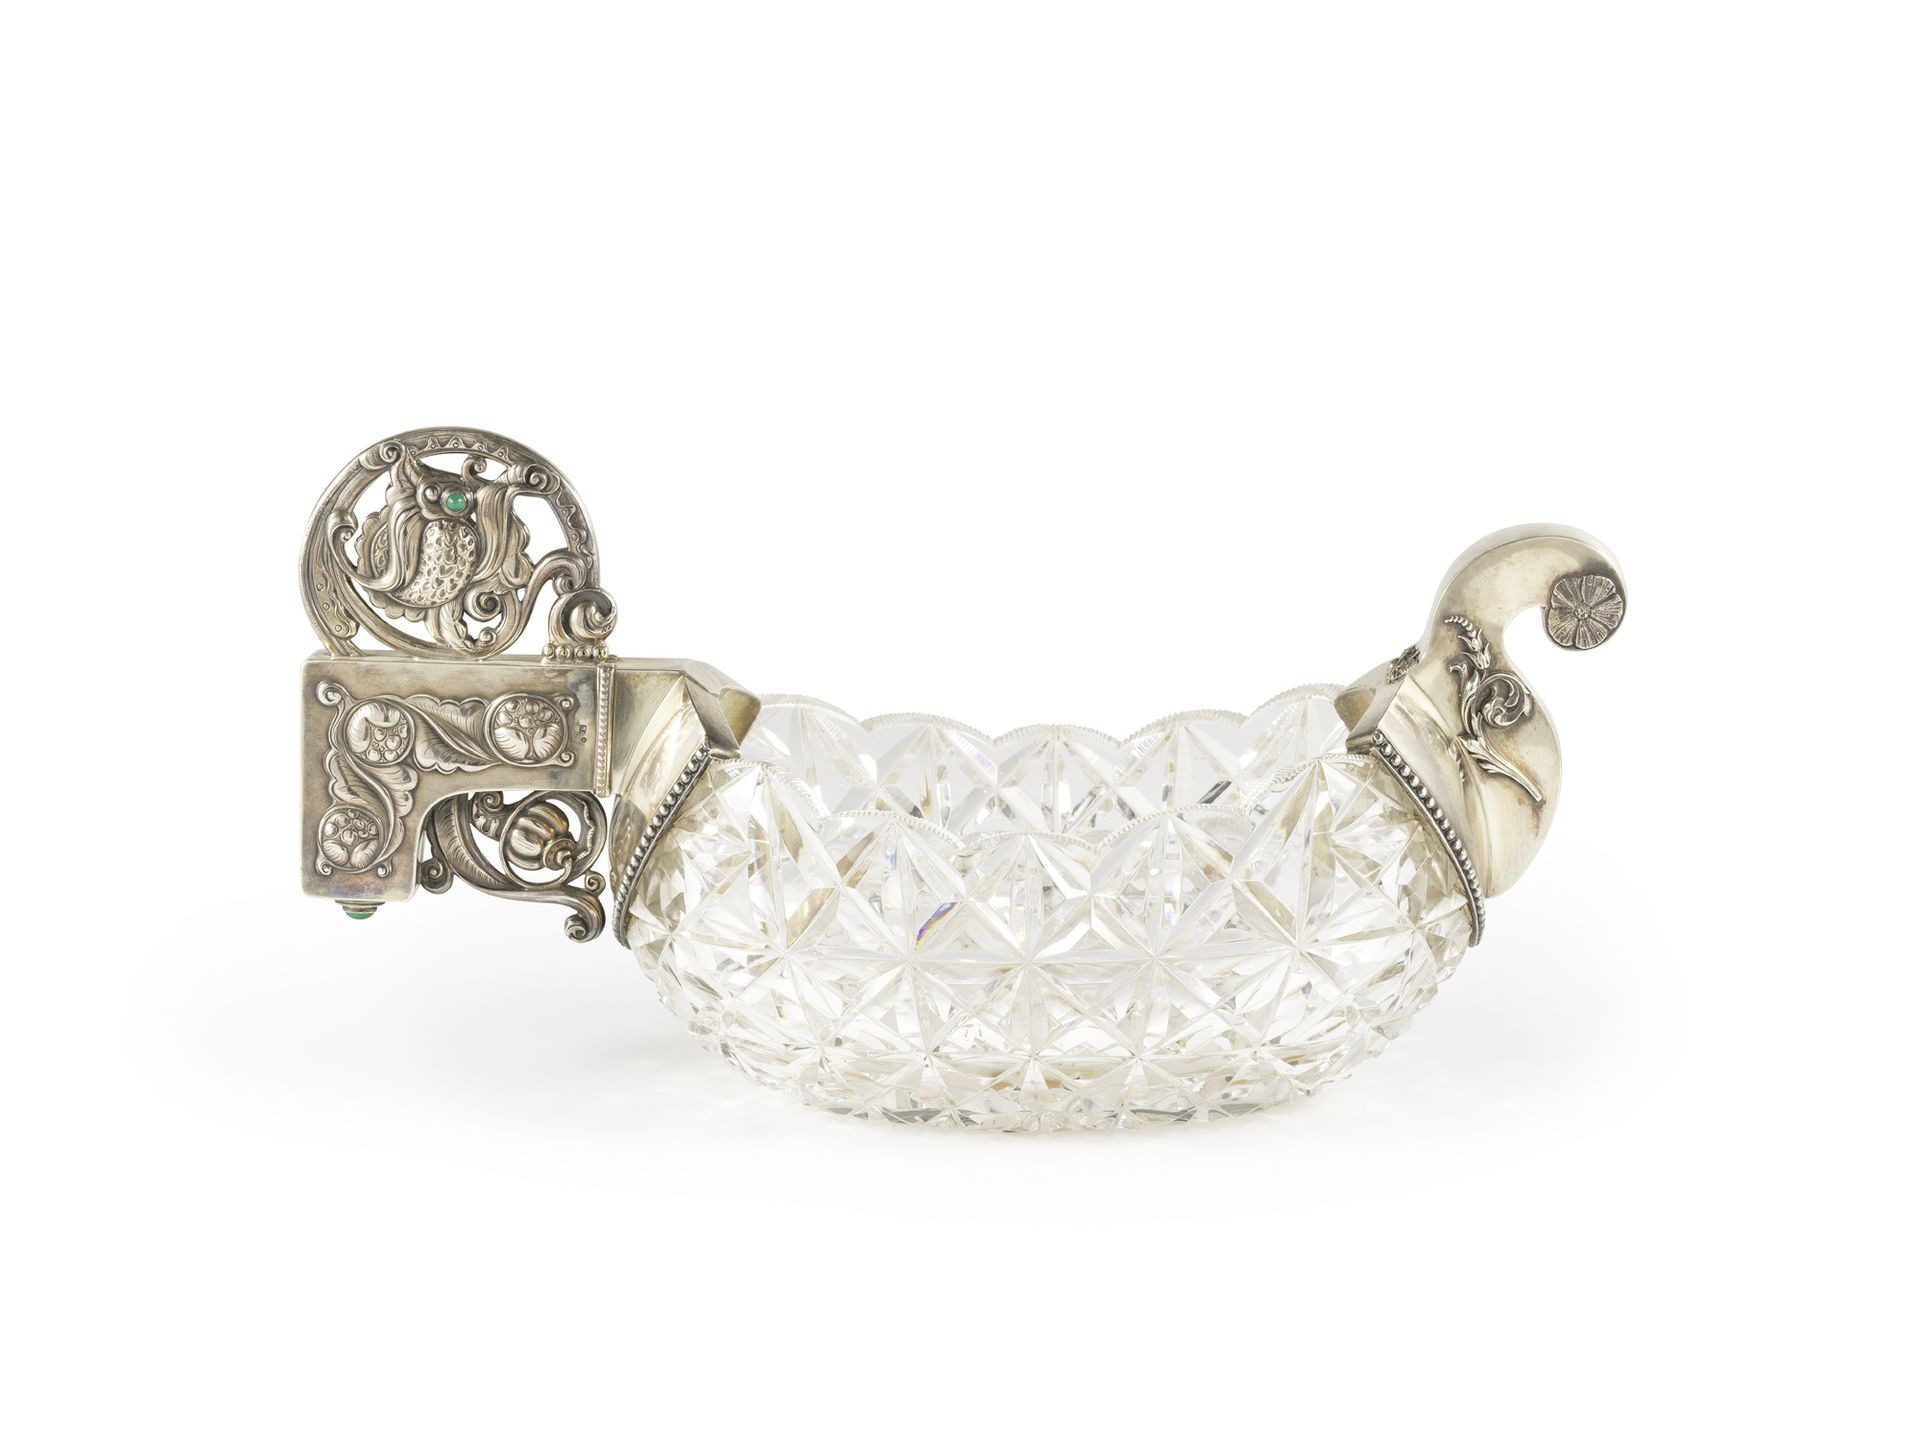 Kovsh en argent 875°/°° et cristal taillé Art Nouveau 875°/°银和新艺术主义切割水晶的Kovsh腕表
&hellip;